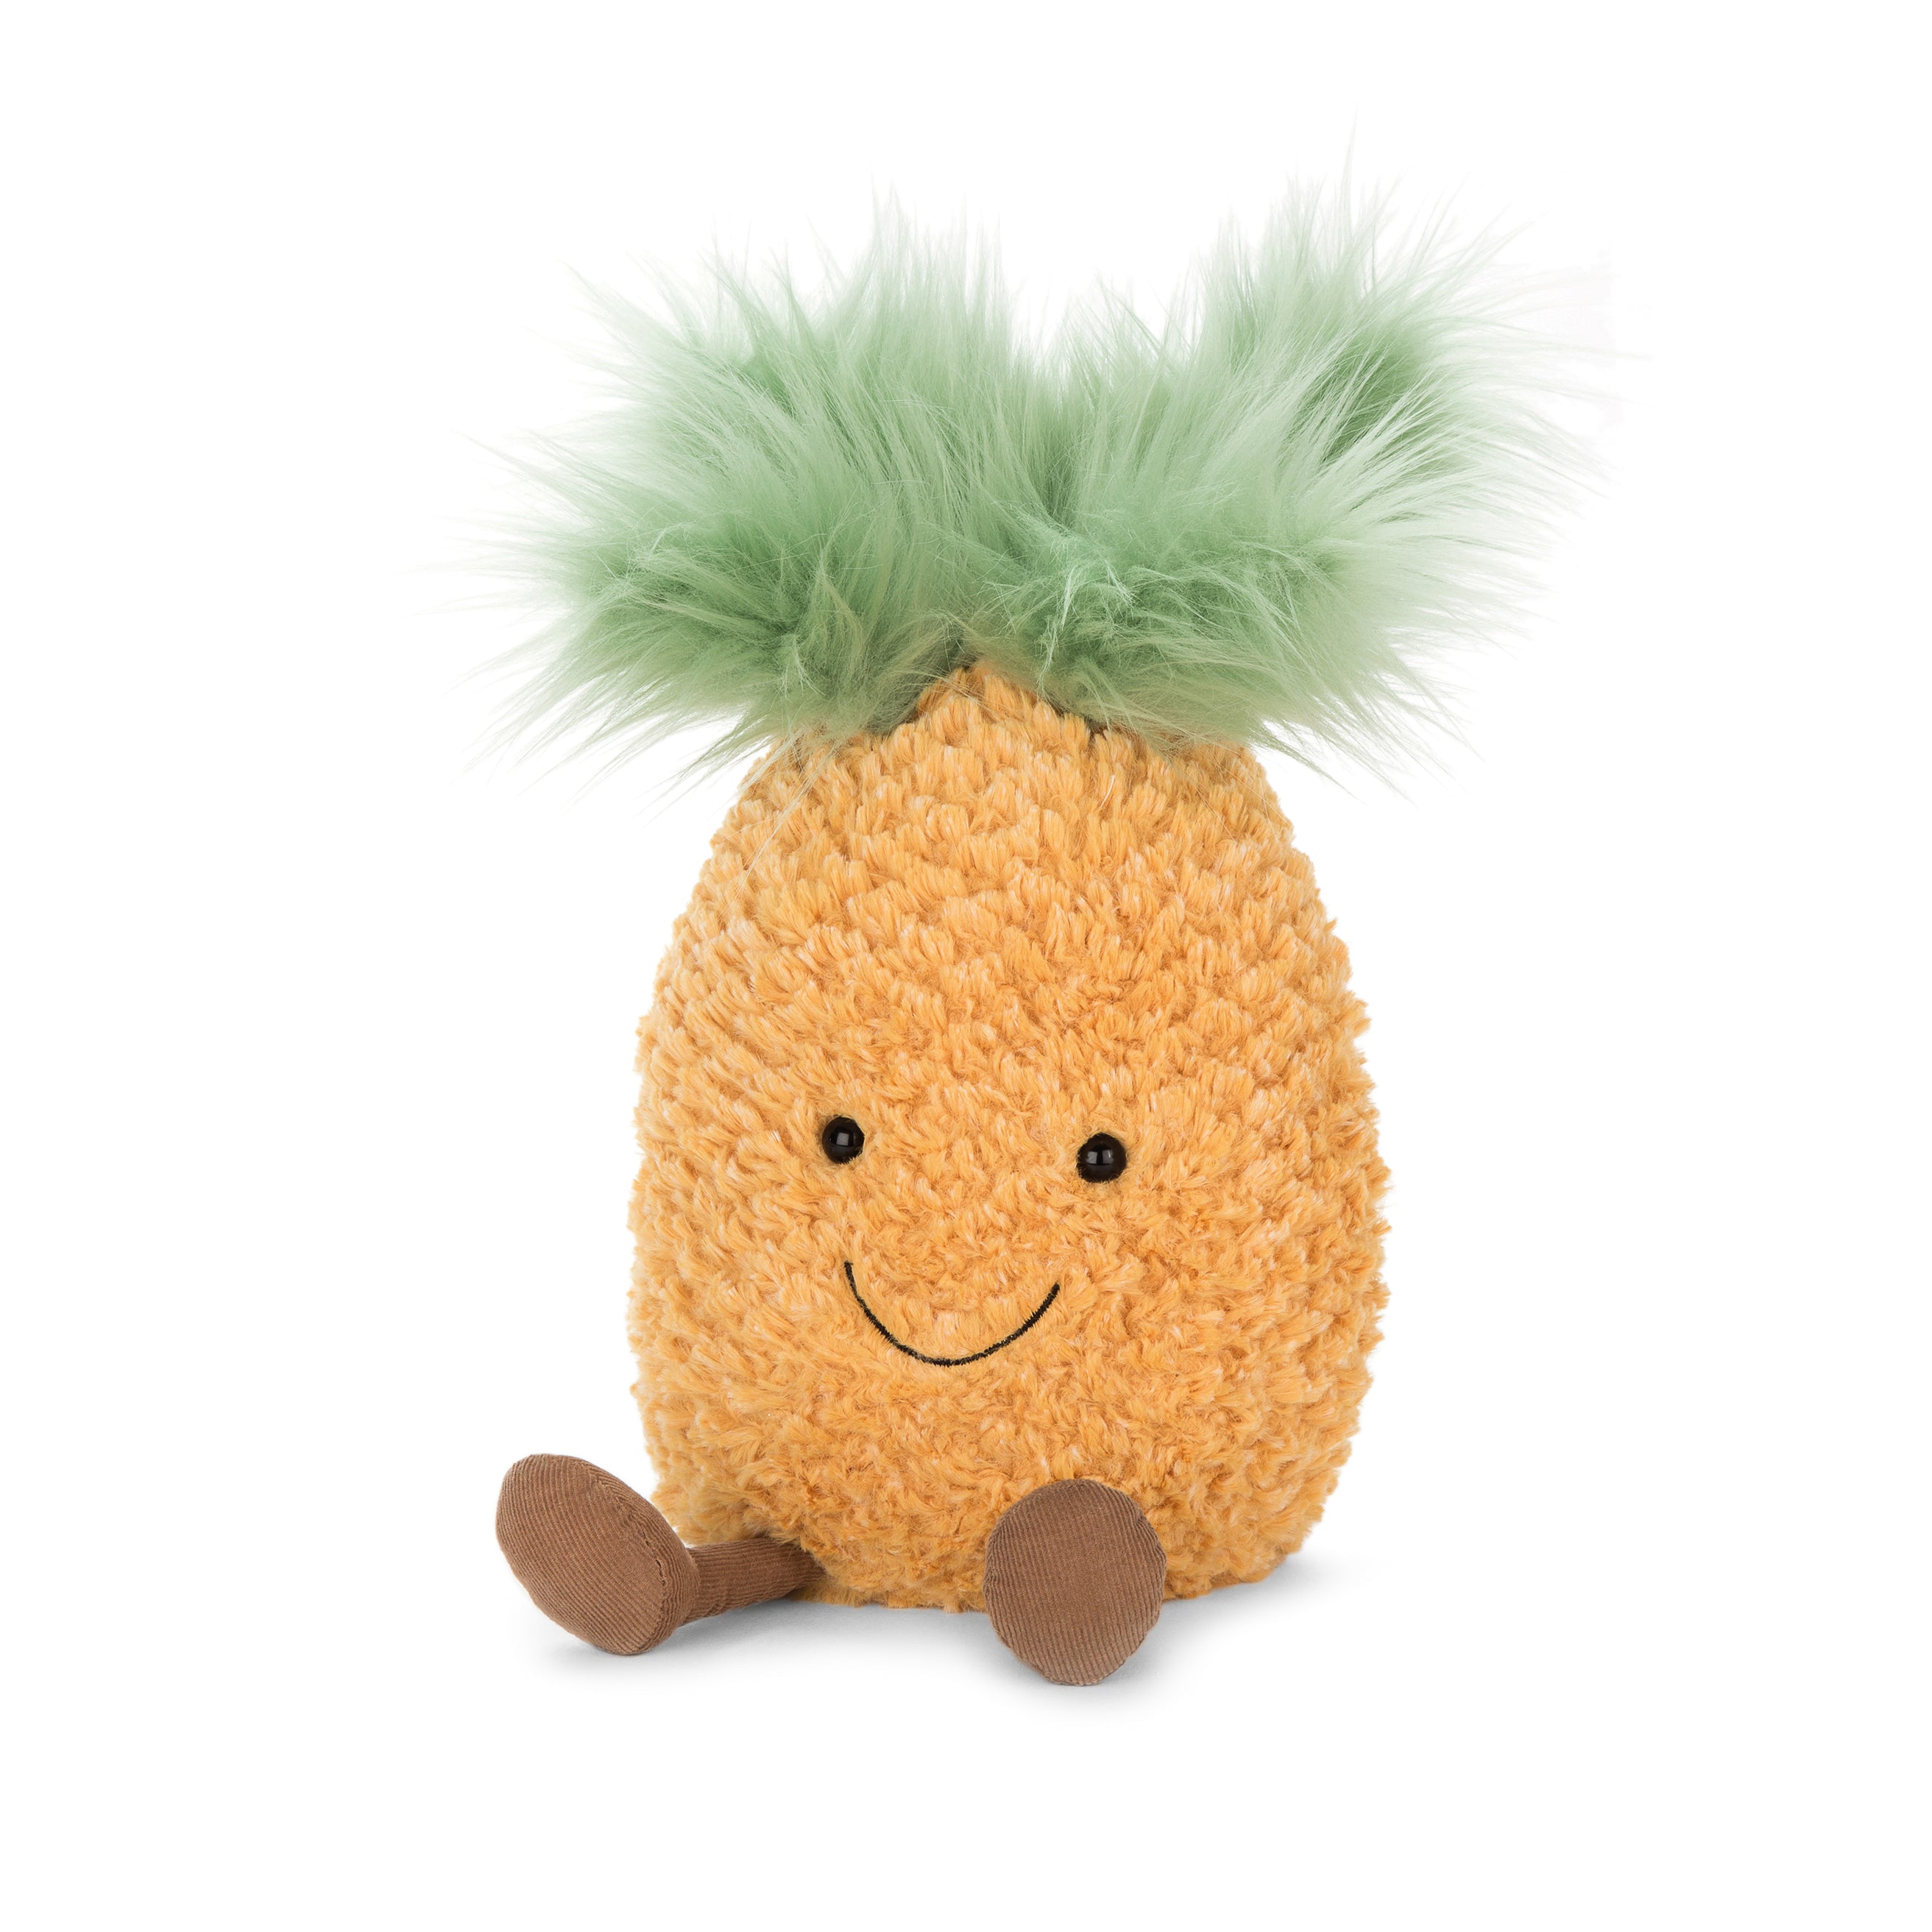 Amuseable Pineapple